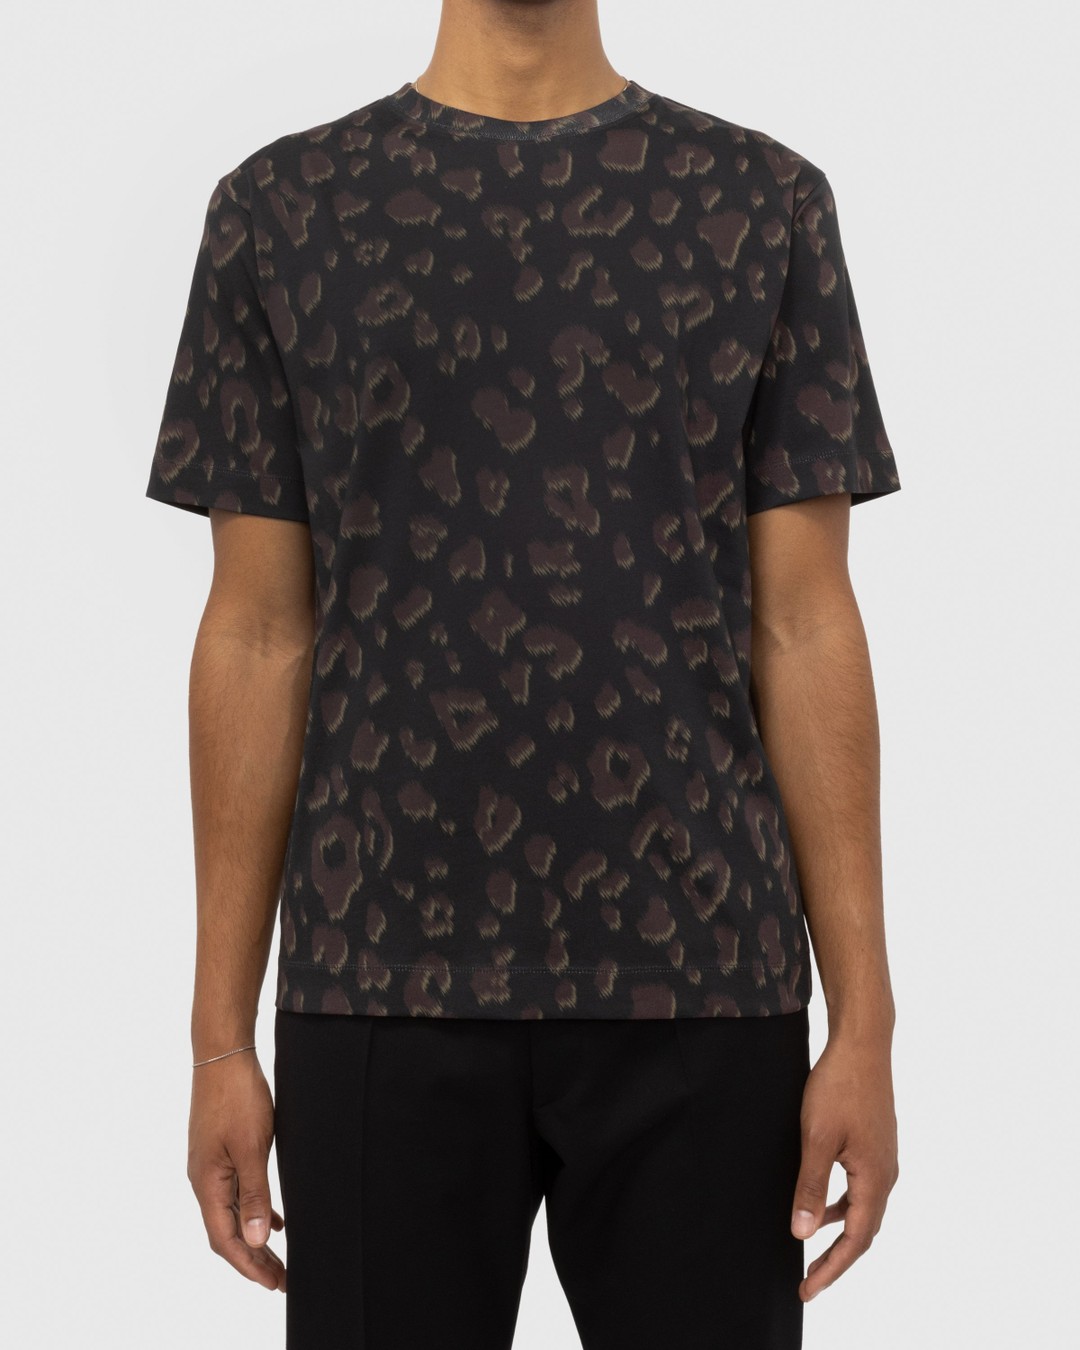 Dries van Noten – Hertz T-Shirt Black - Tops - Black - Image 3